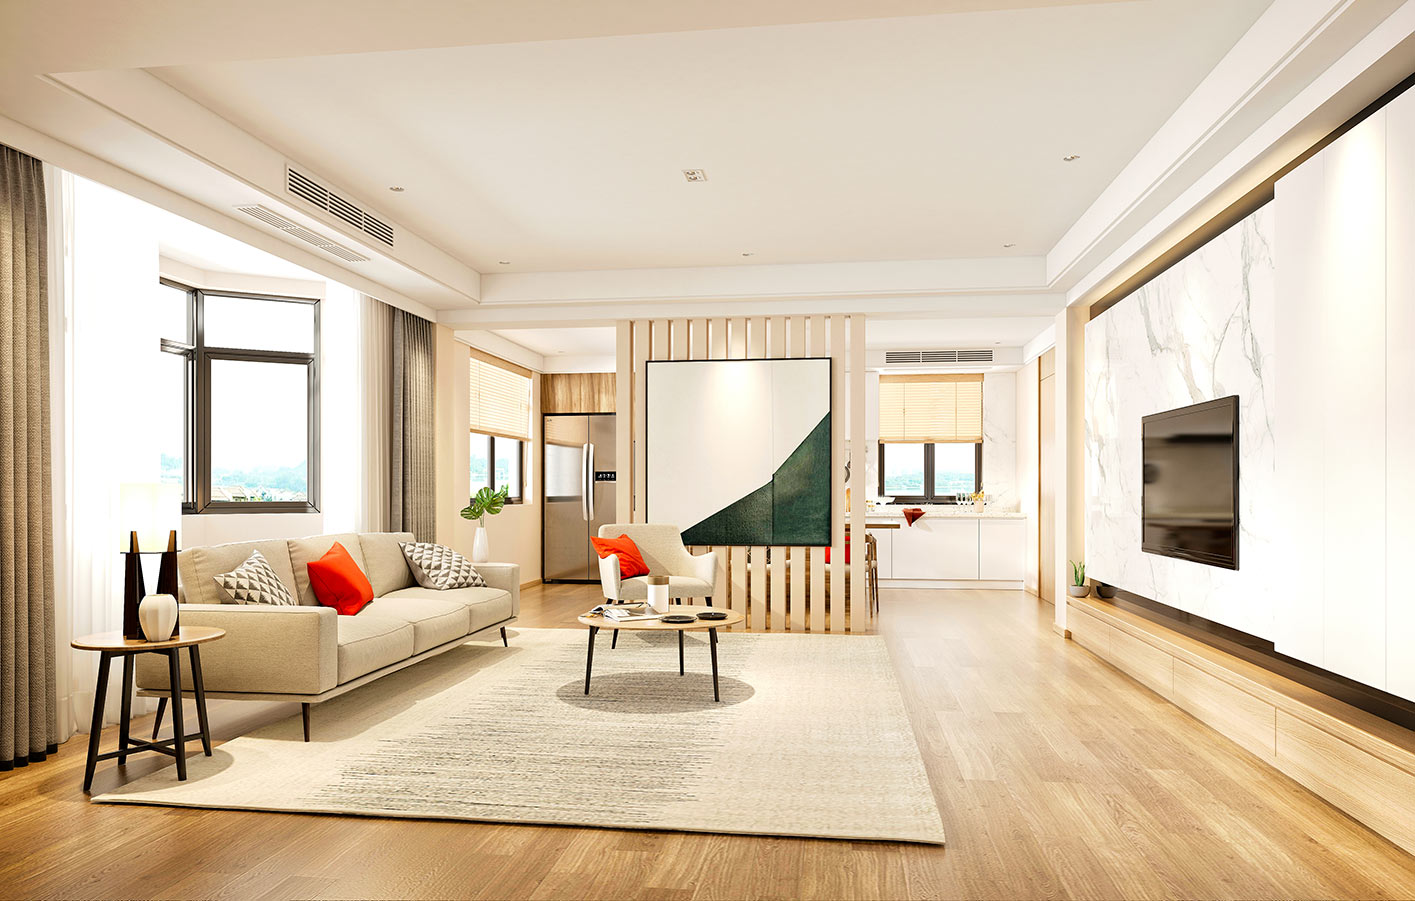 heller Furnierboden in einem modernen, offenen Wohnbereich mit hellen Möbeln